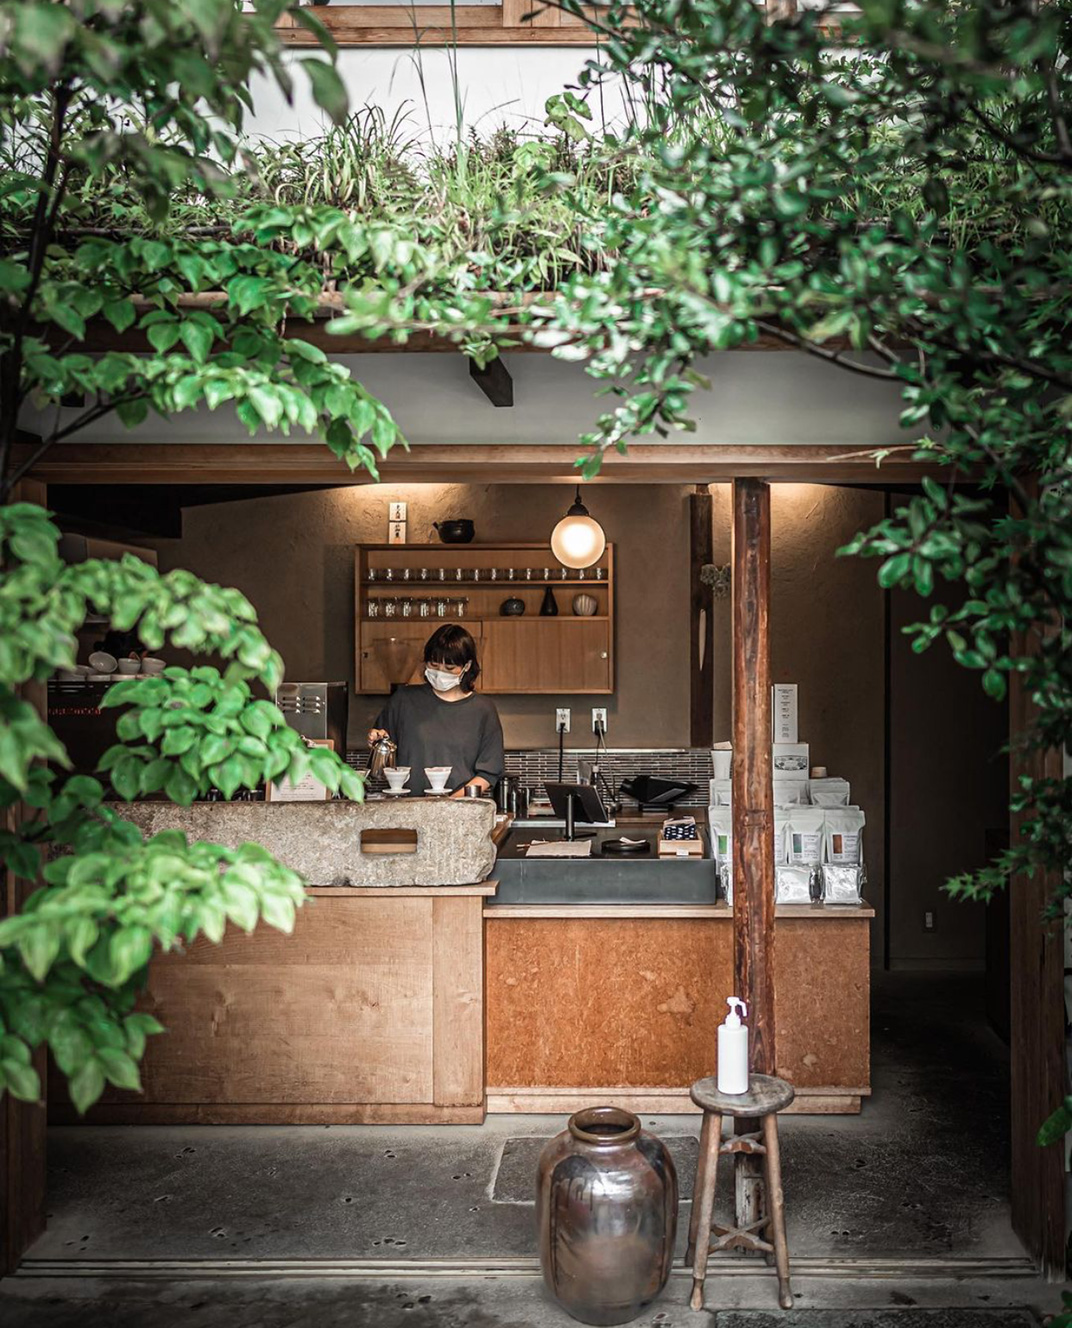 周末咖啡烘焙工坊 日本 东京 西安 面包店 烘培 咖啡店 木色 logo设计 vi设计 空间设计